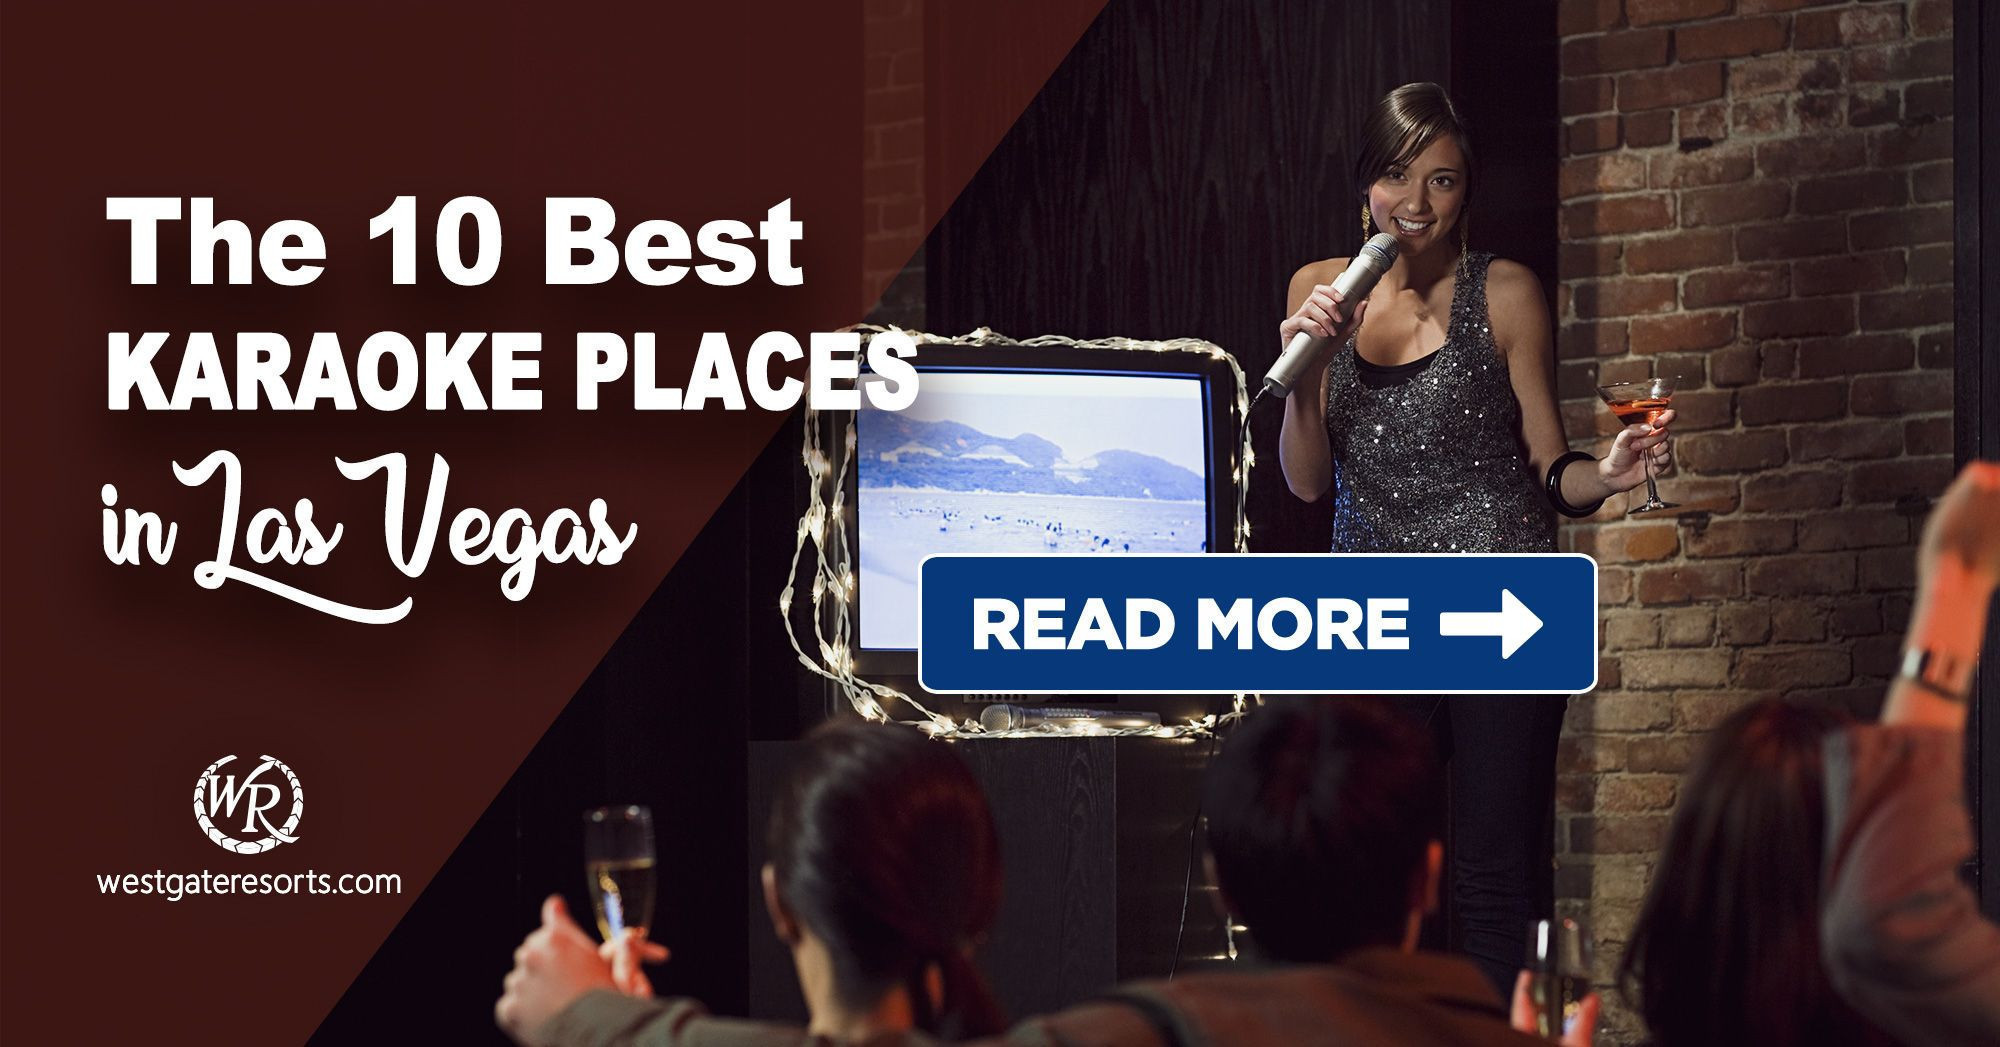 The 10 Best Karaoke Places in Las Vegas!